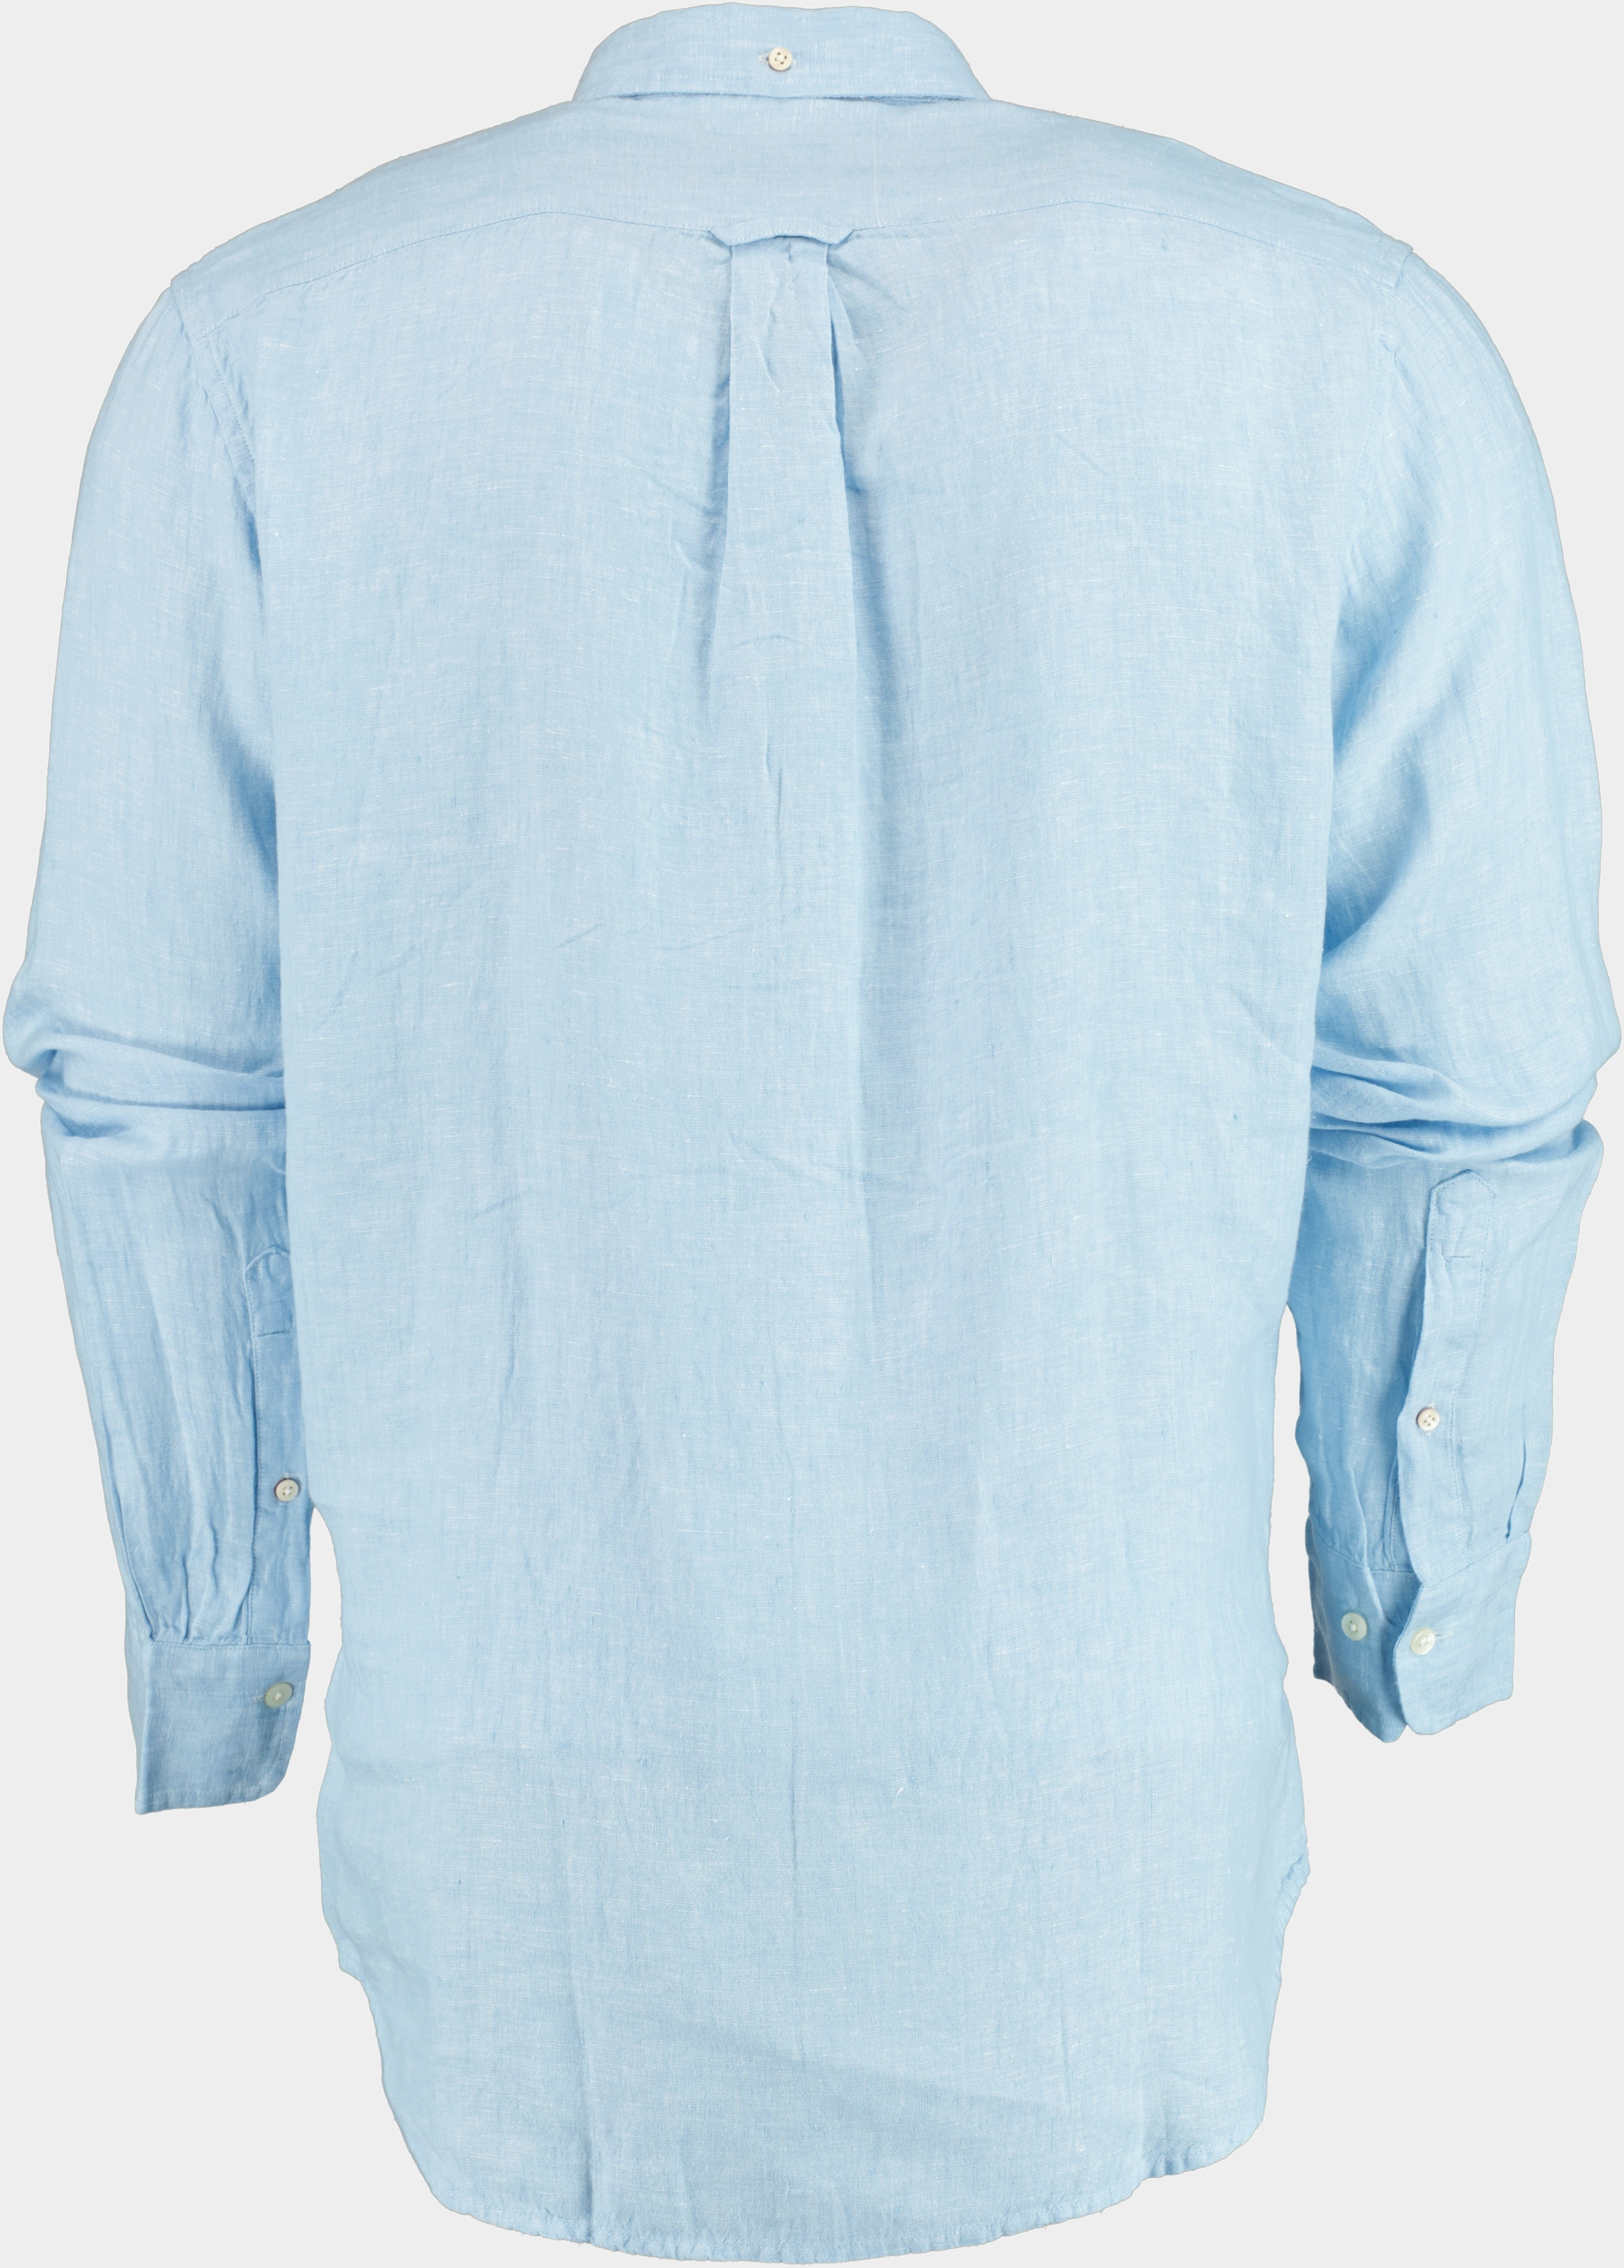 Gant Casual hemd lange mouw Blauw Overhemd blauw 100% linnen 3012420/468